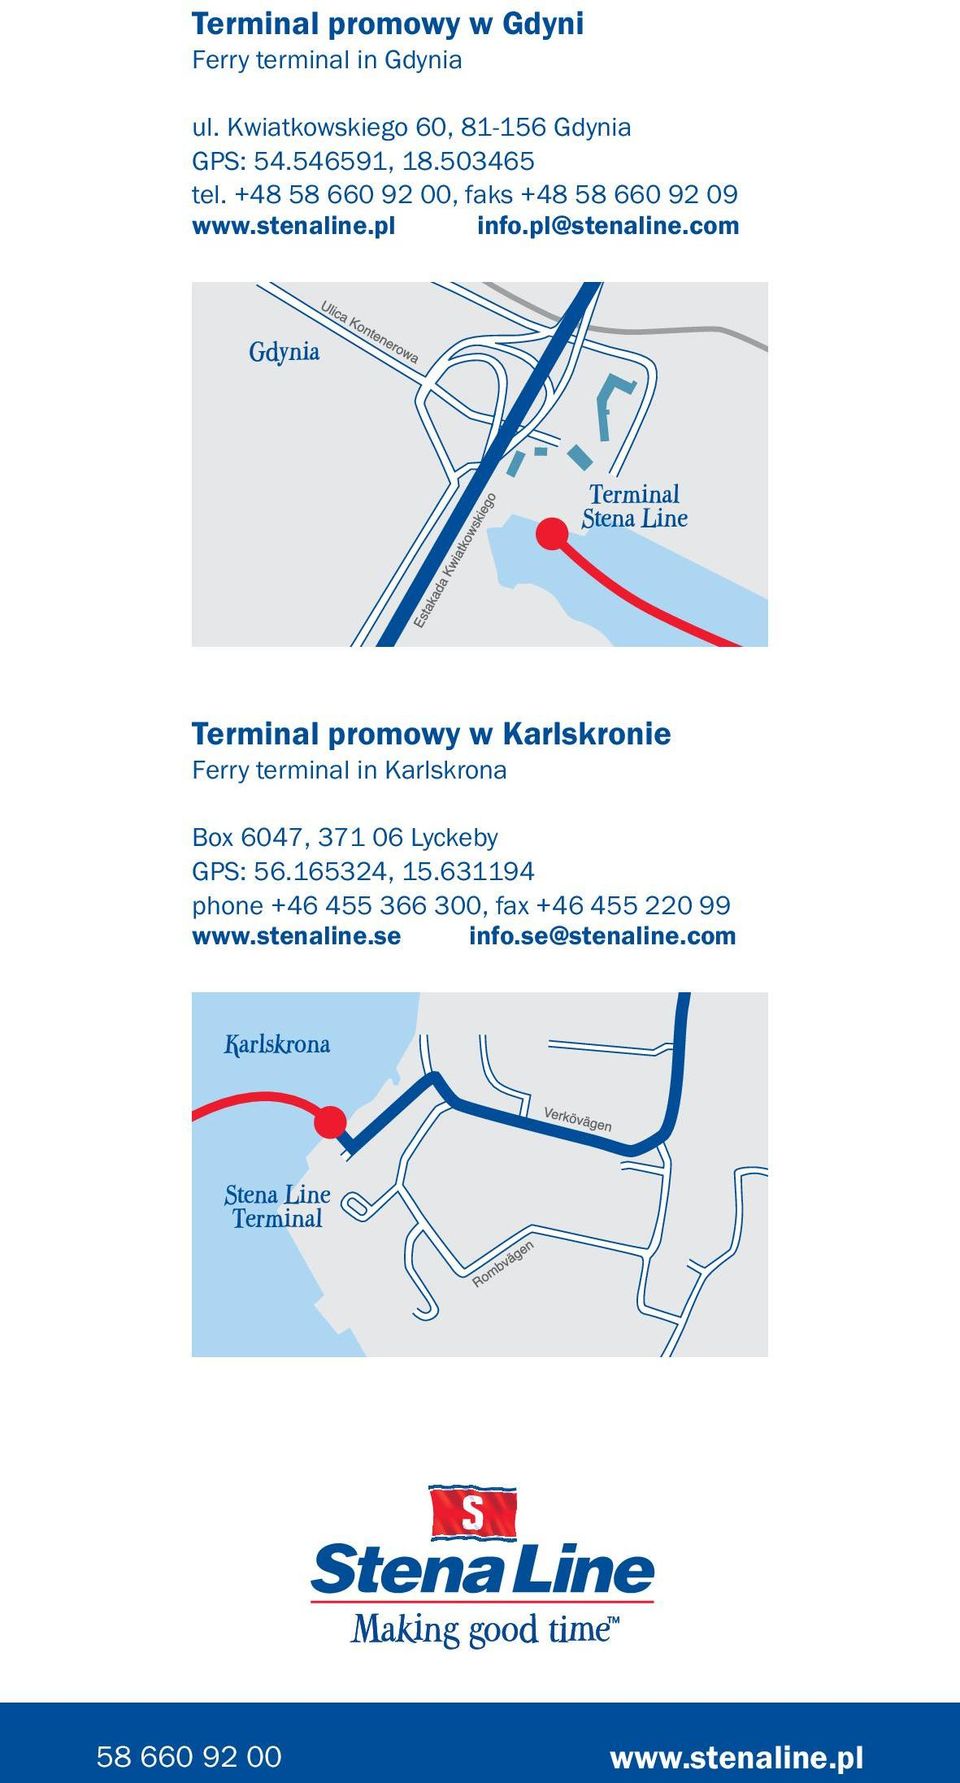 com Terminal promowy w Karlskronie Ferry terminal in Karlskrona Box 6047, 371 06 Lyckeby GPS: 56.